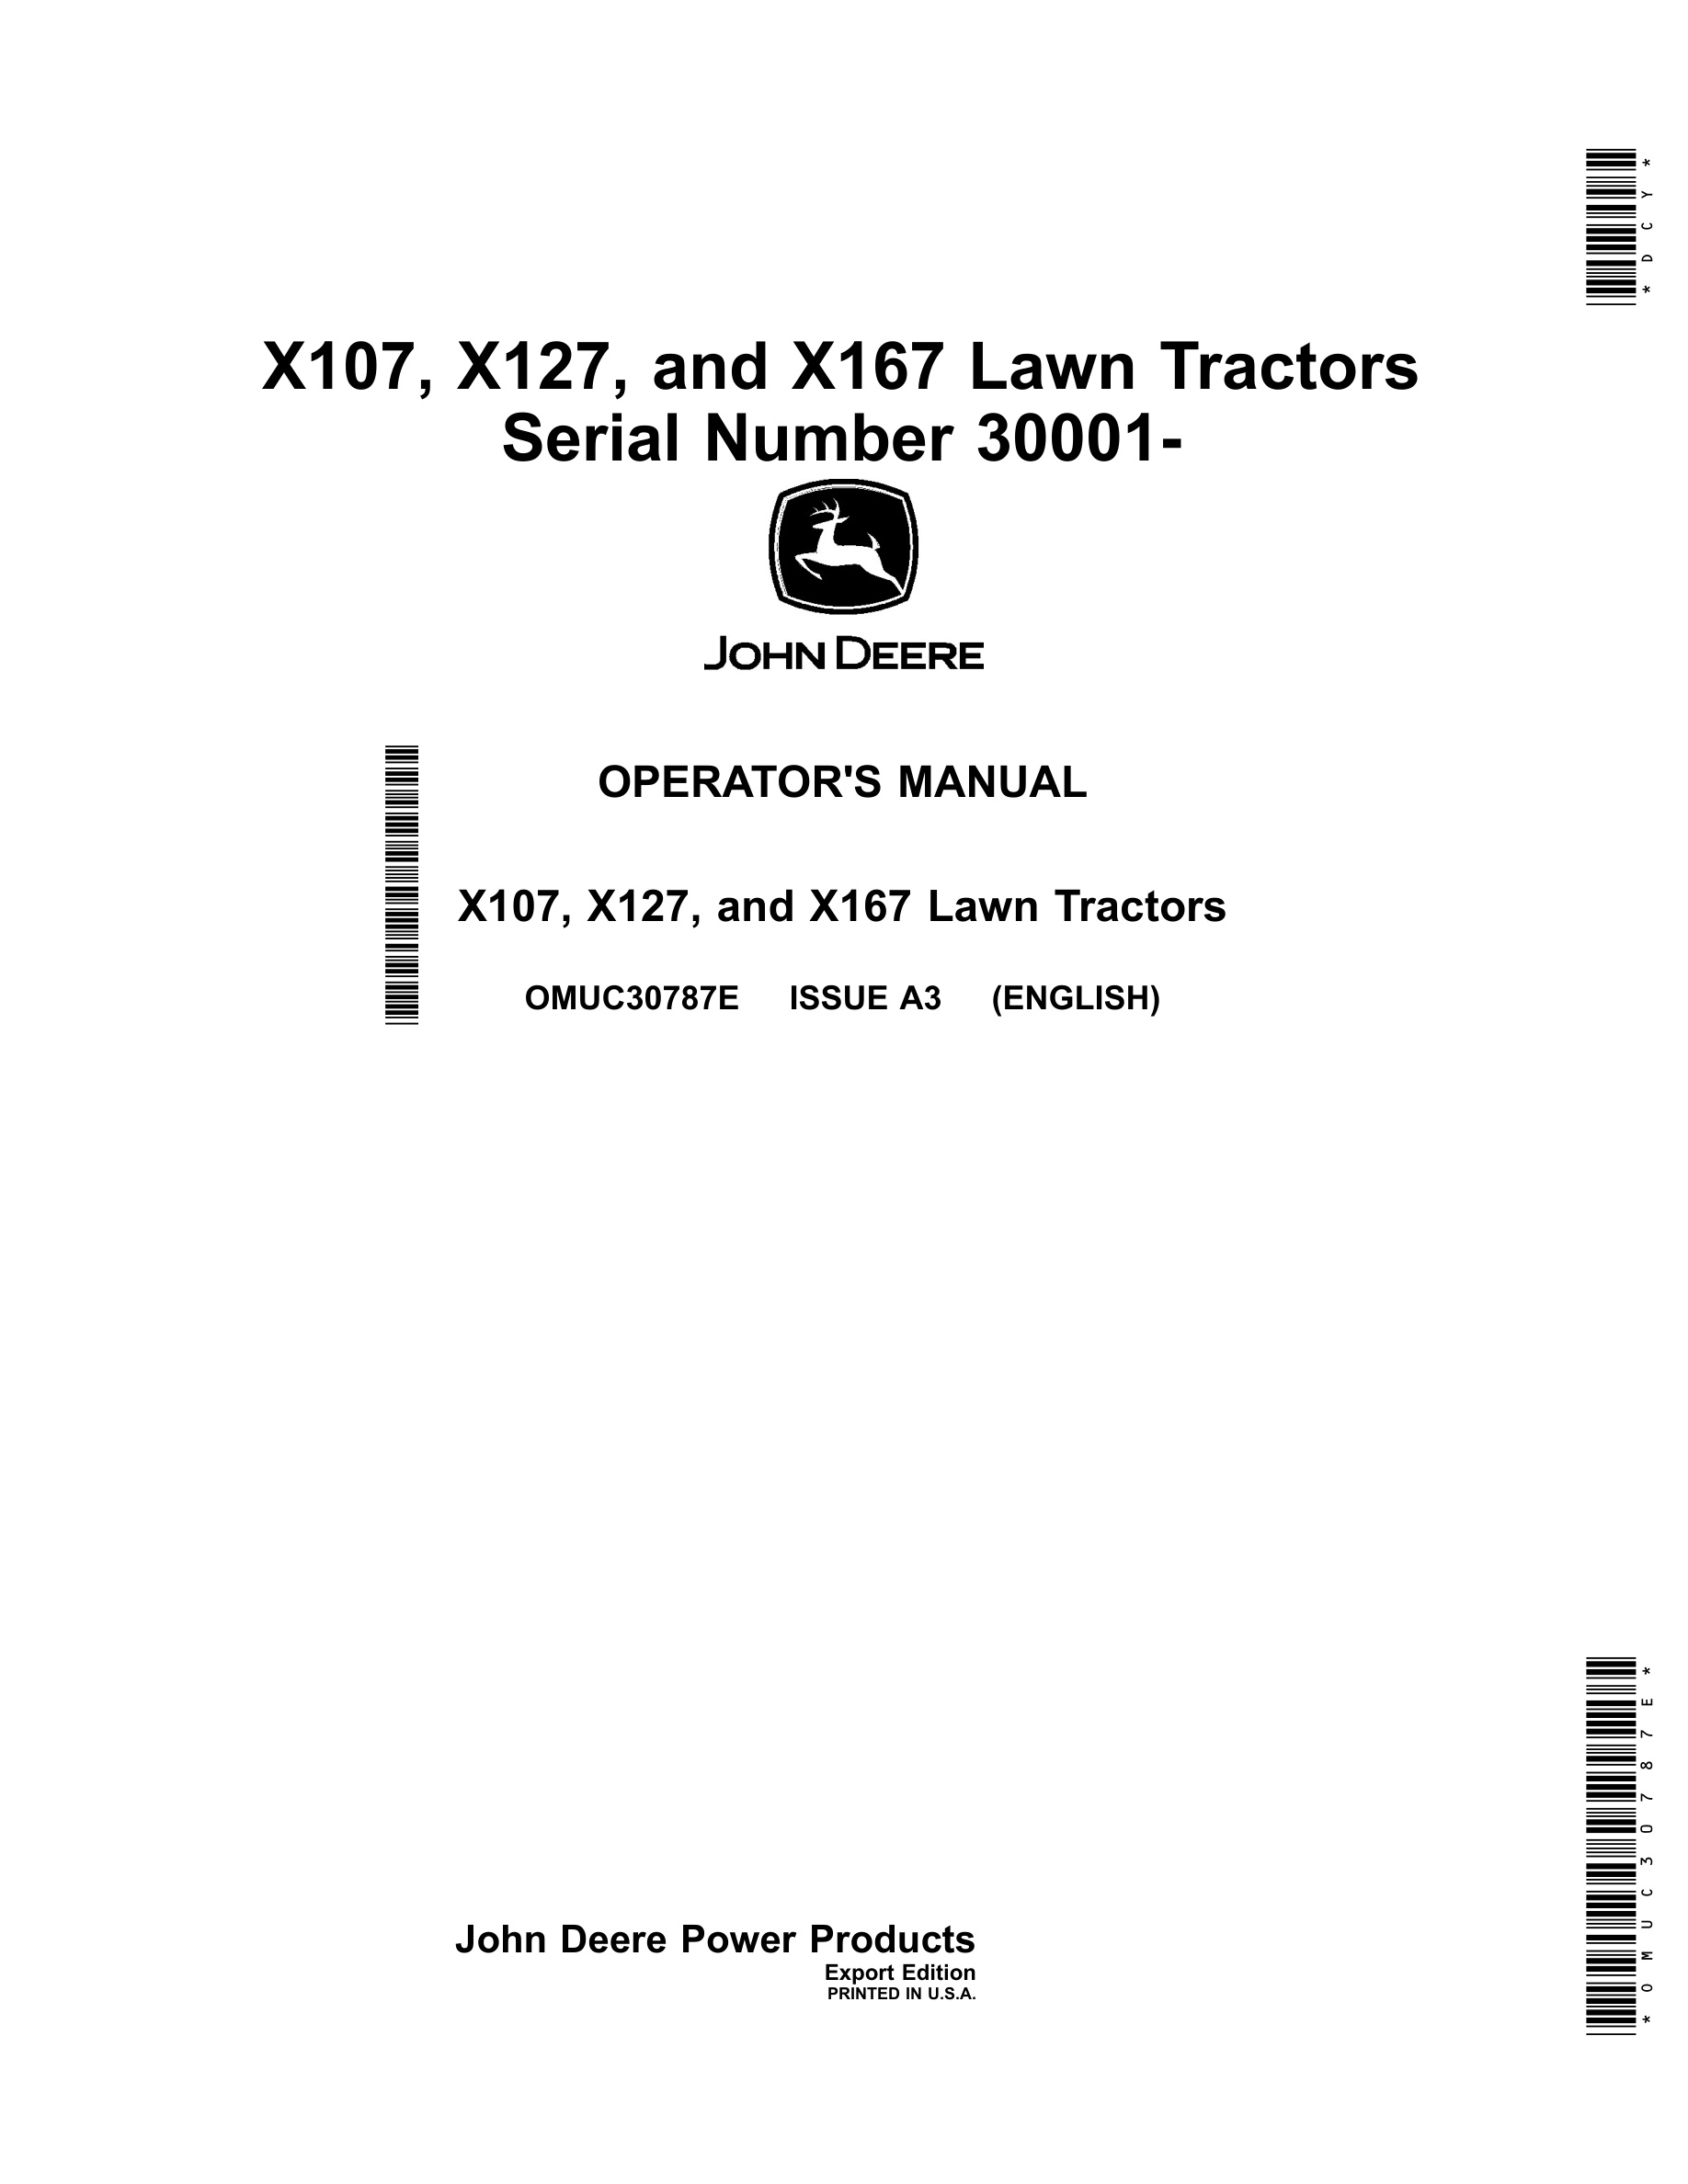 John Deere X107, X127, And X167 Lawn Tractors Operator Manuals OMUC30787e-1